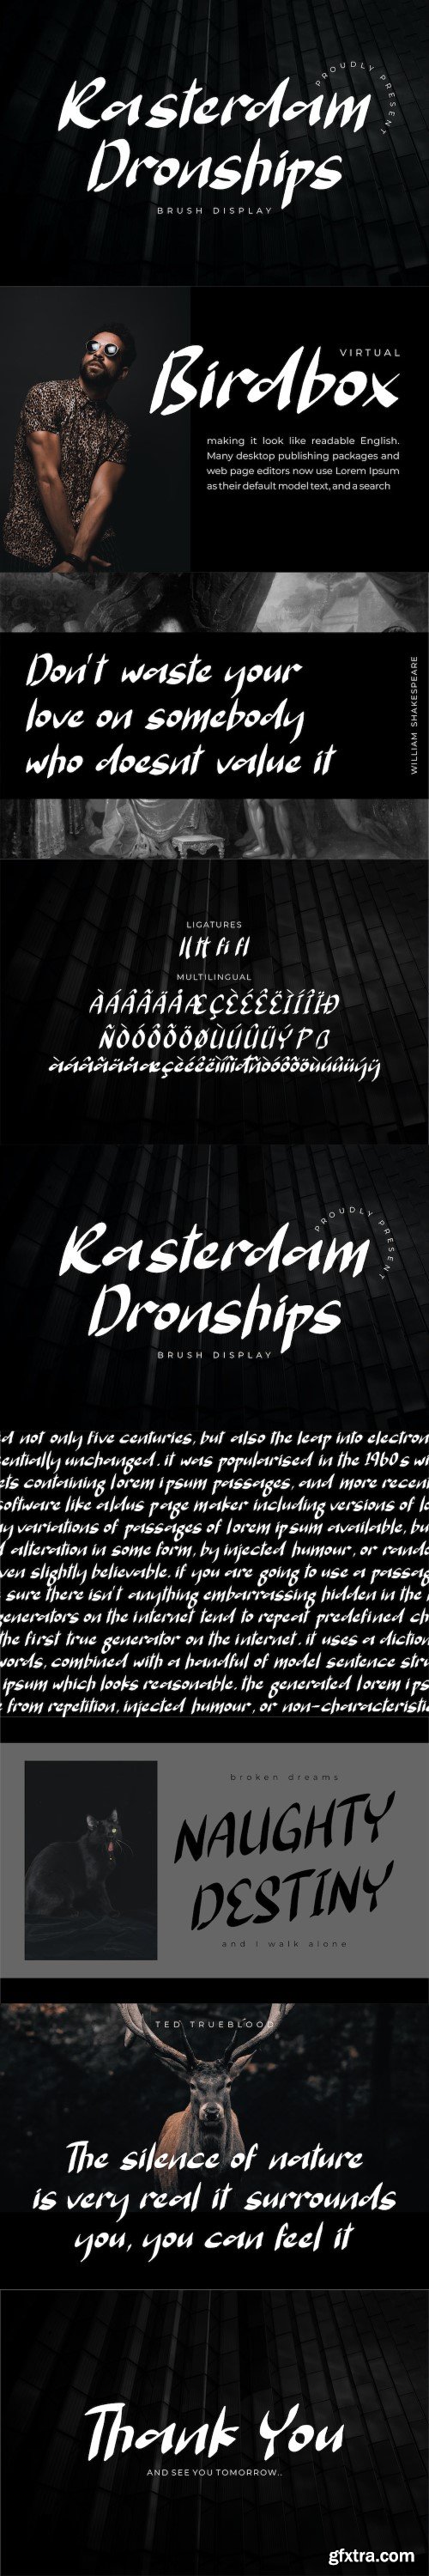 Rasterdam Dronships Brush Display